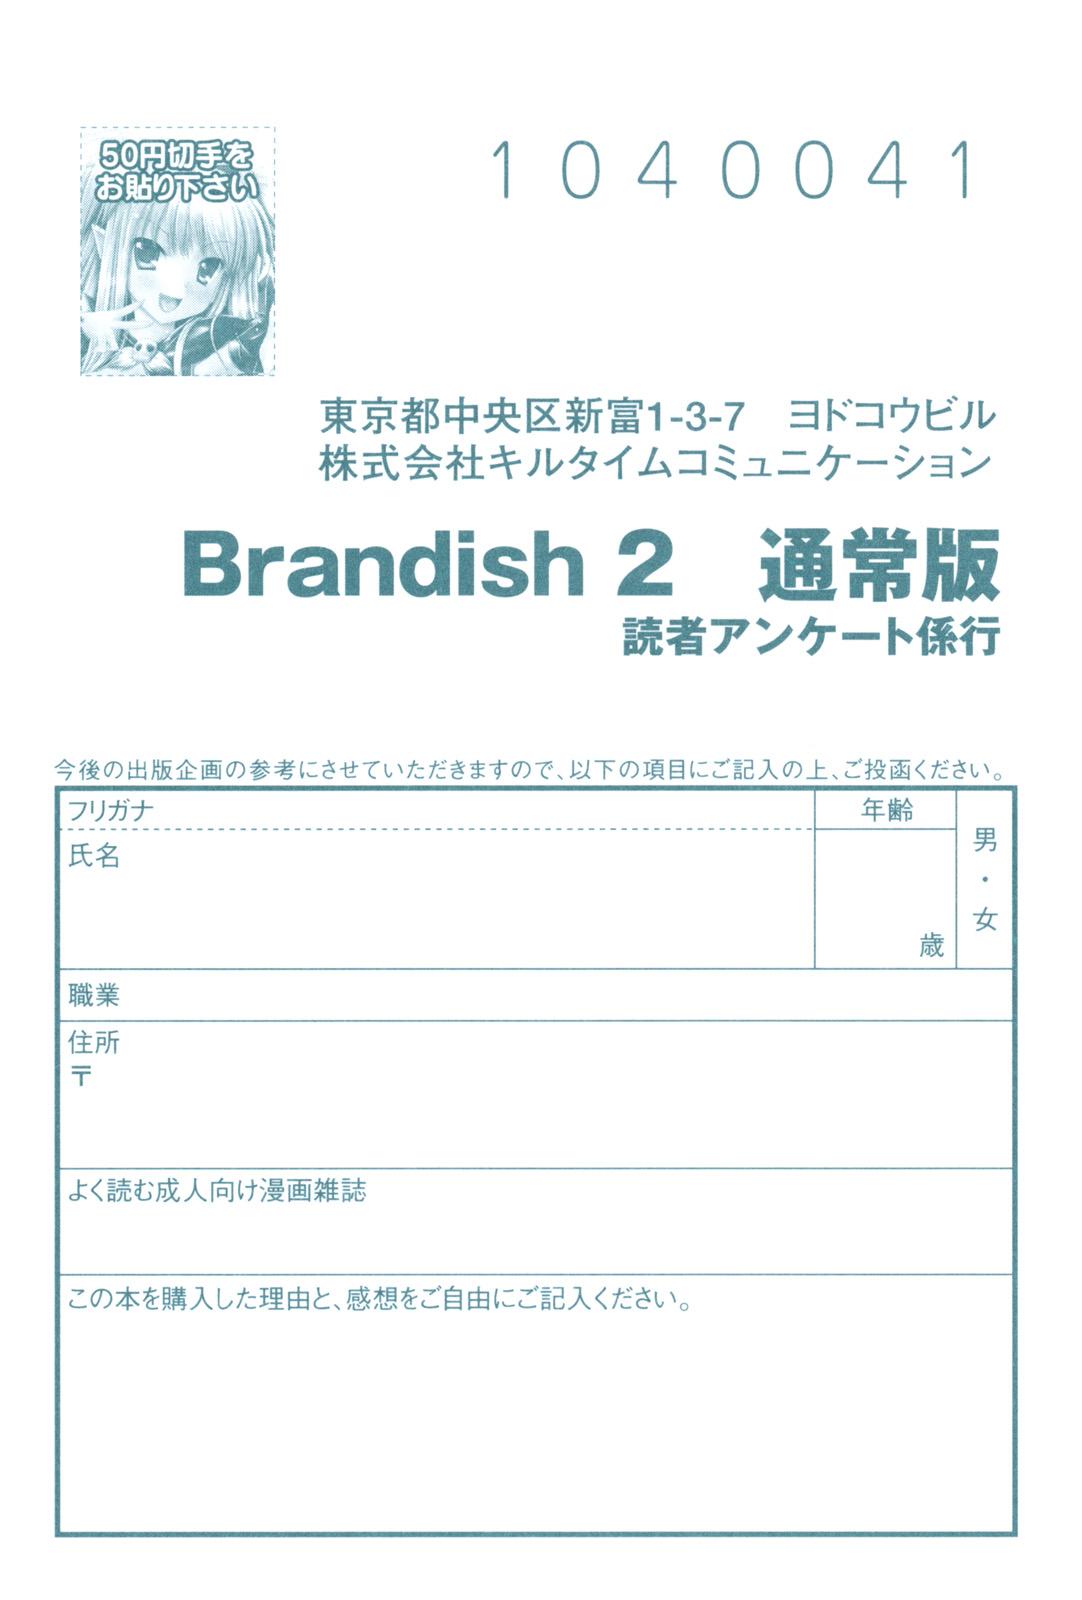 Brandish 2 182